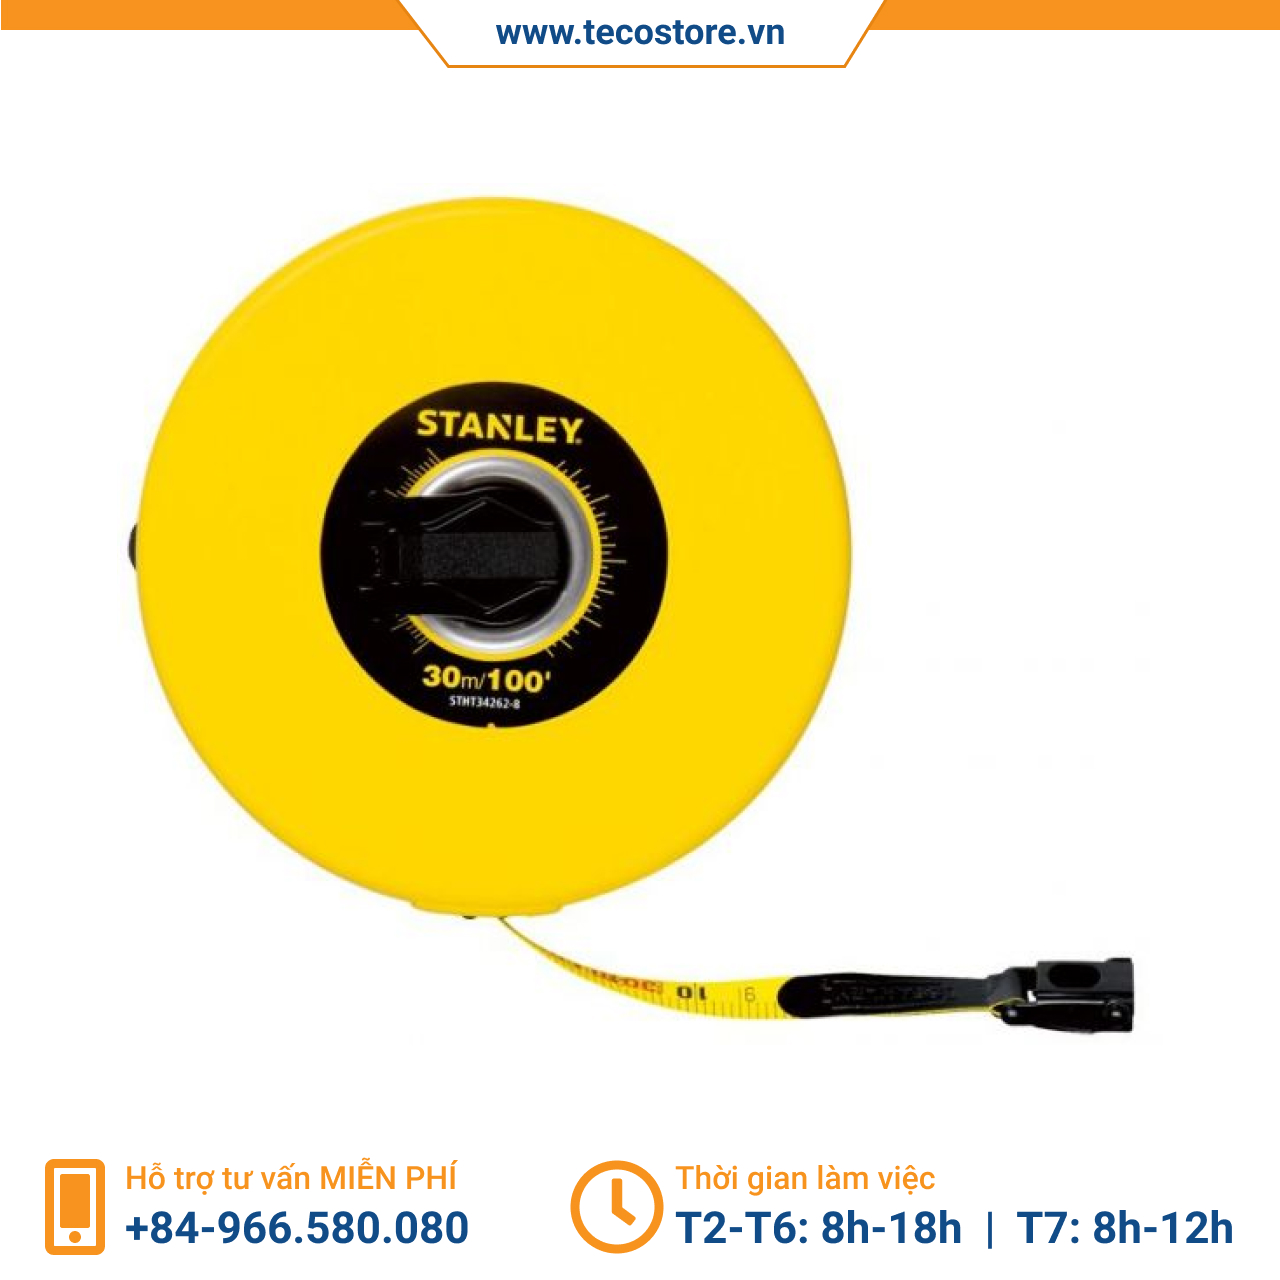 Thước dây sợi thủy tinh Stanley STHT34262-8 30m/100'